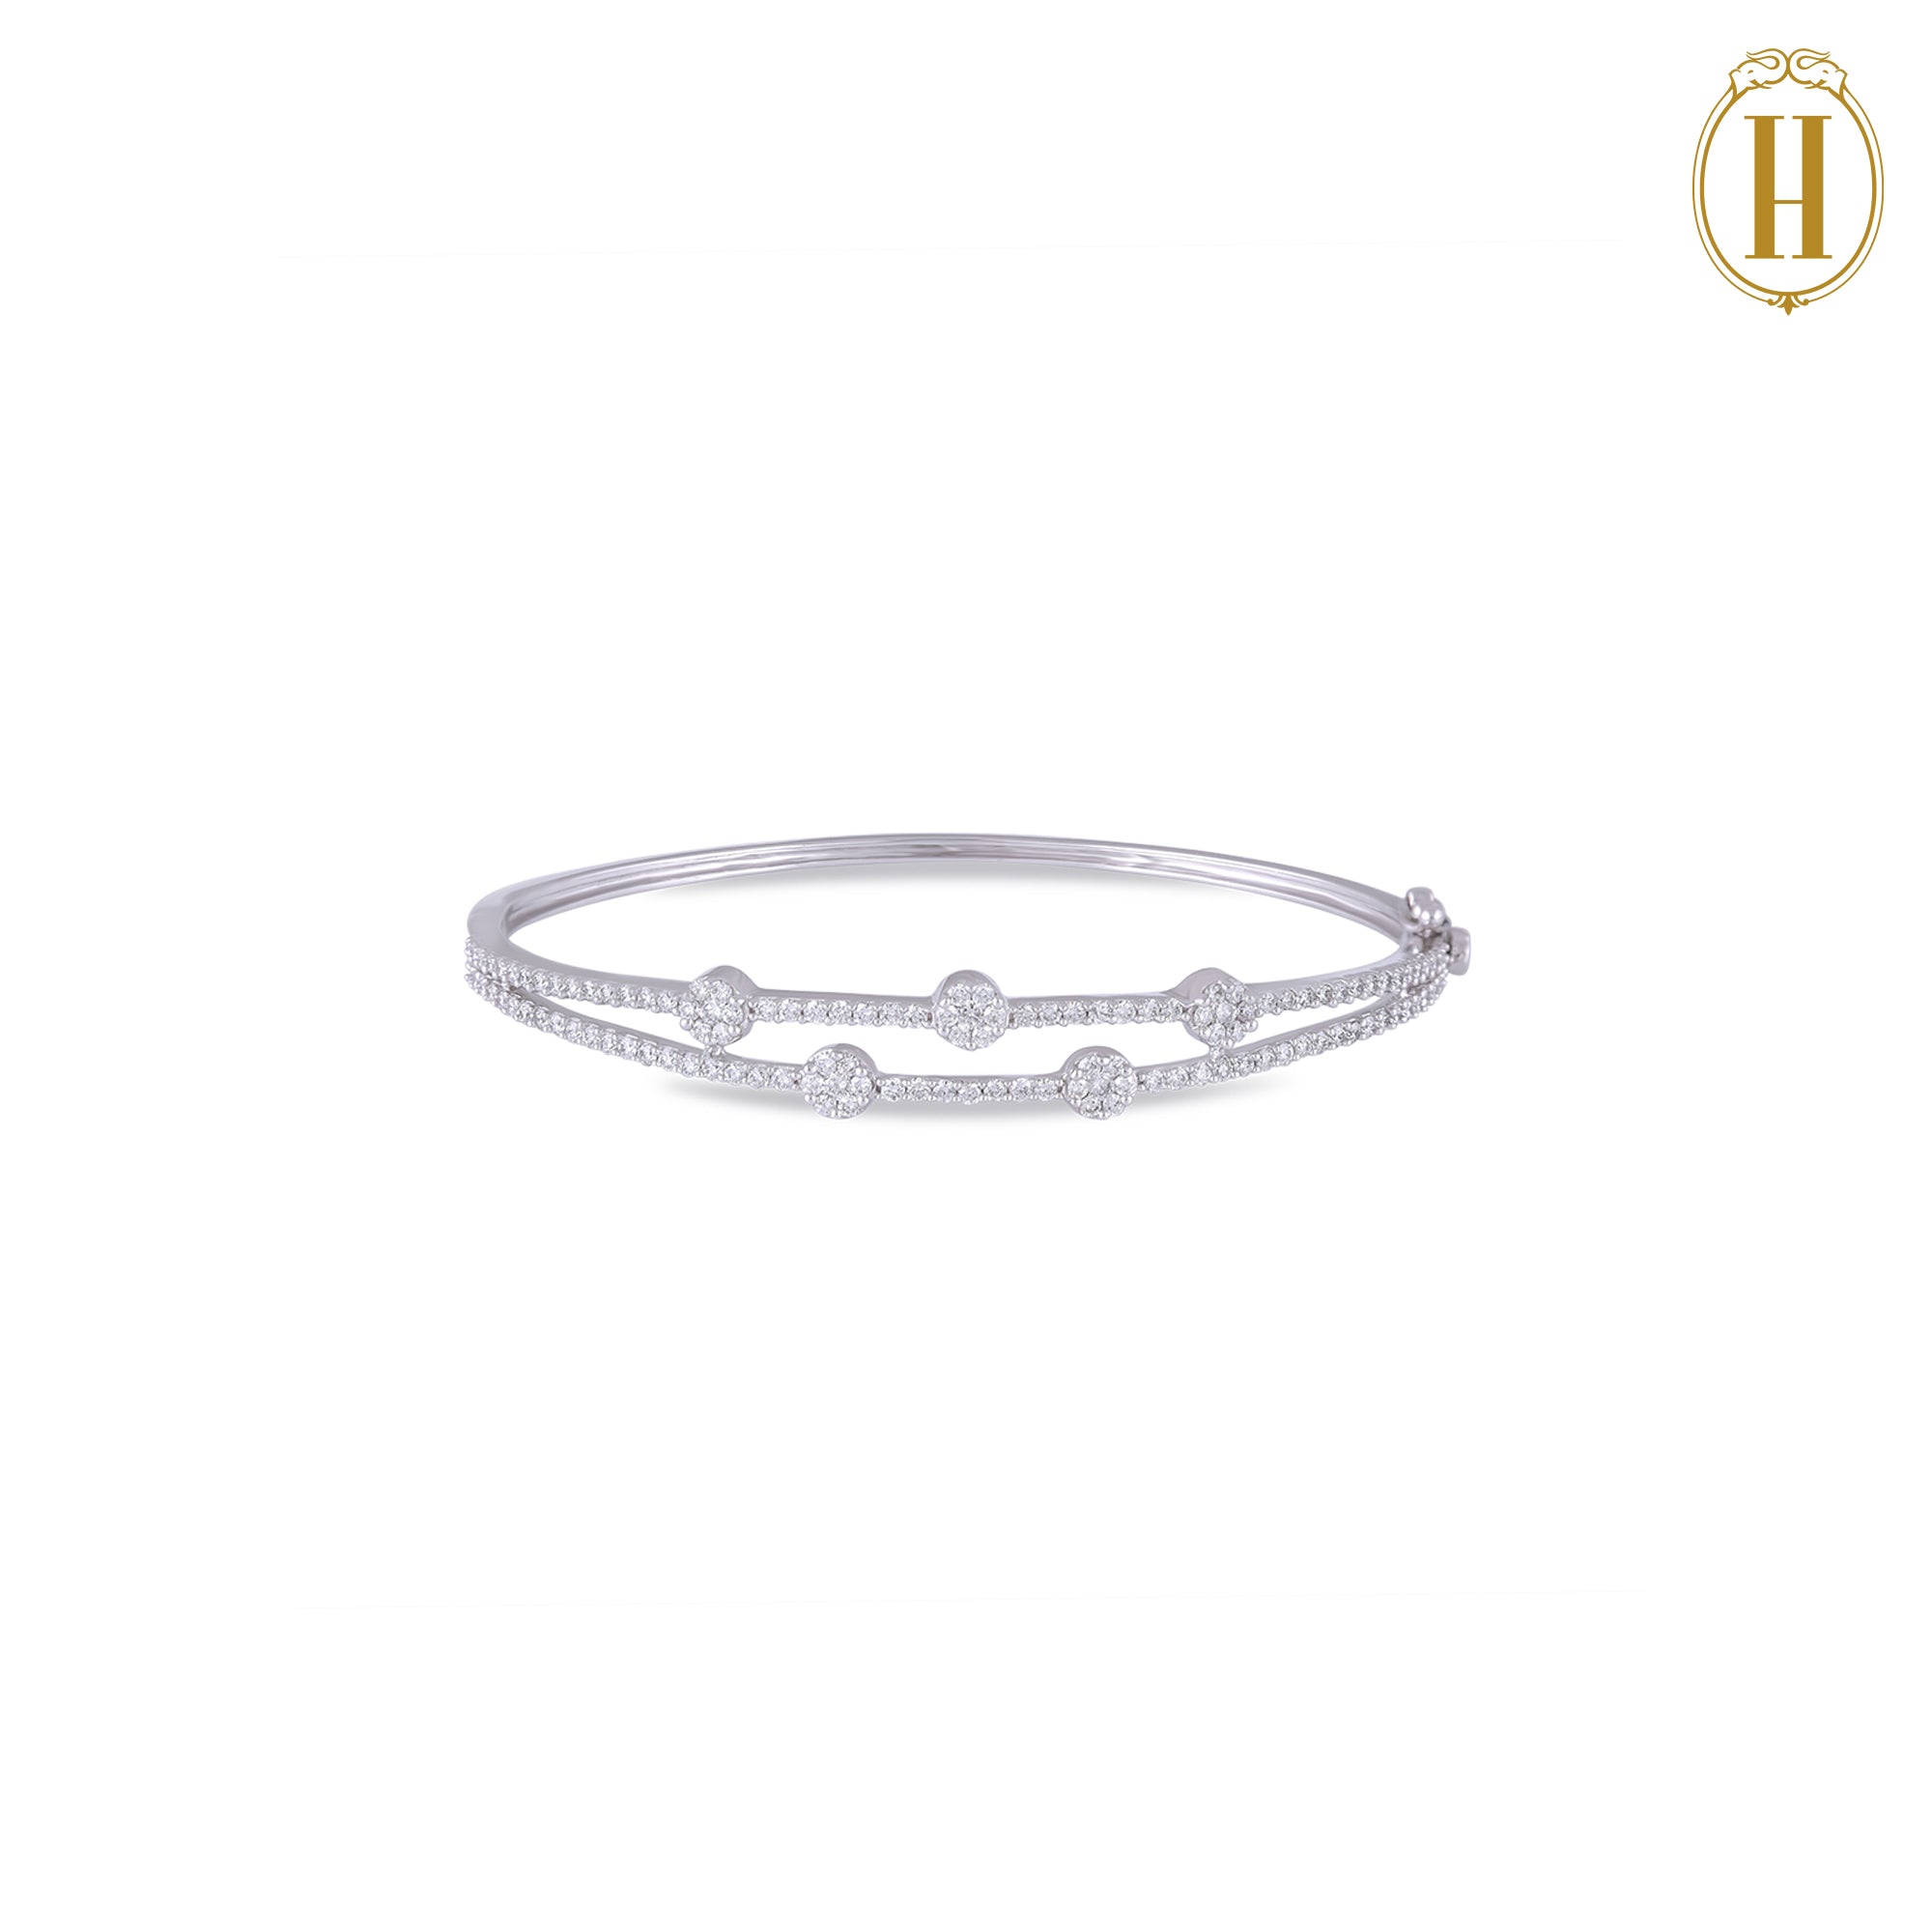 Diamond bracelet for women